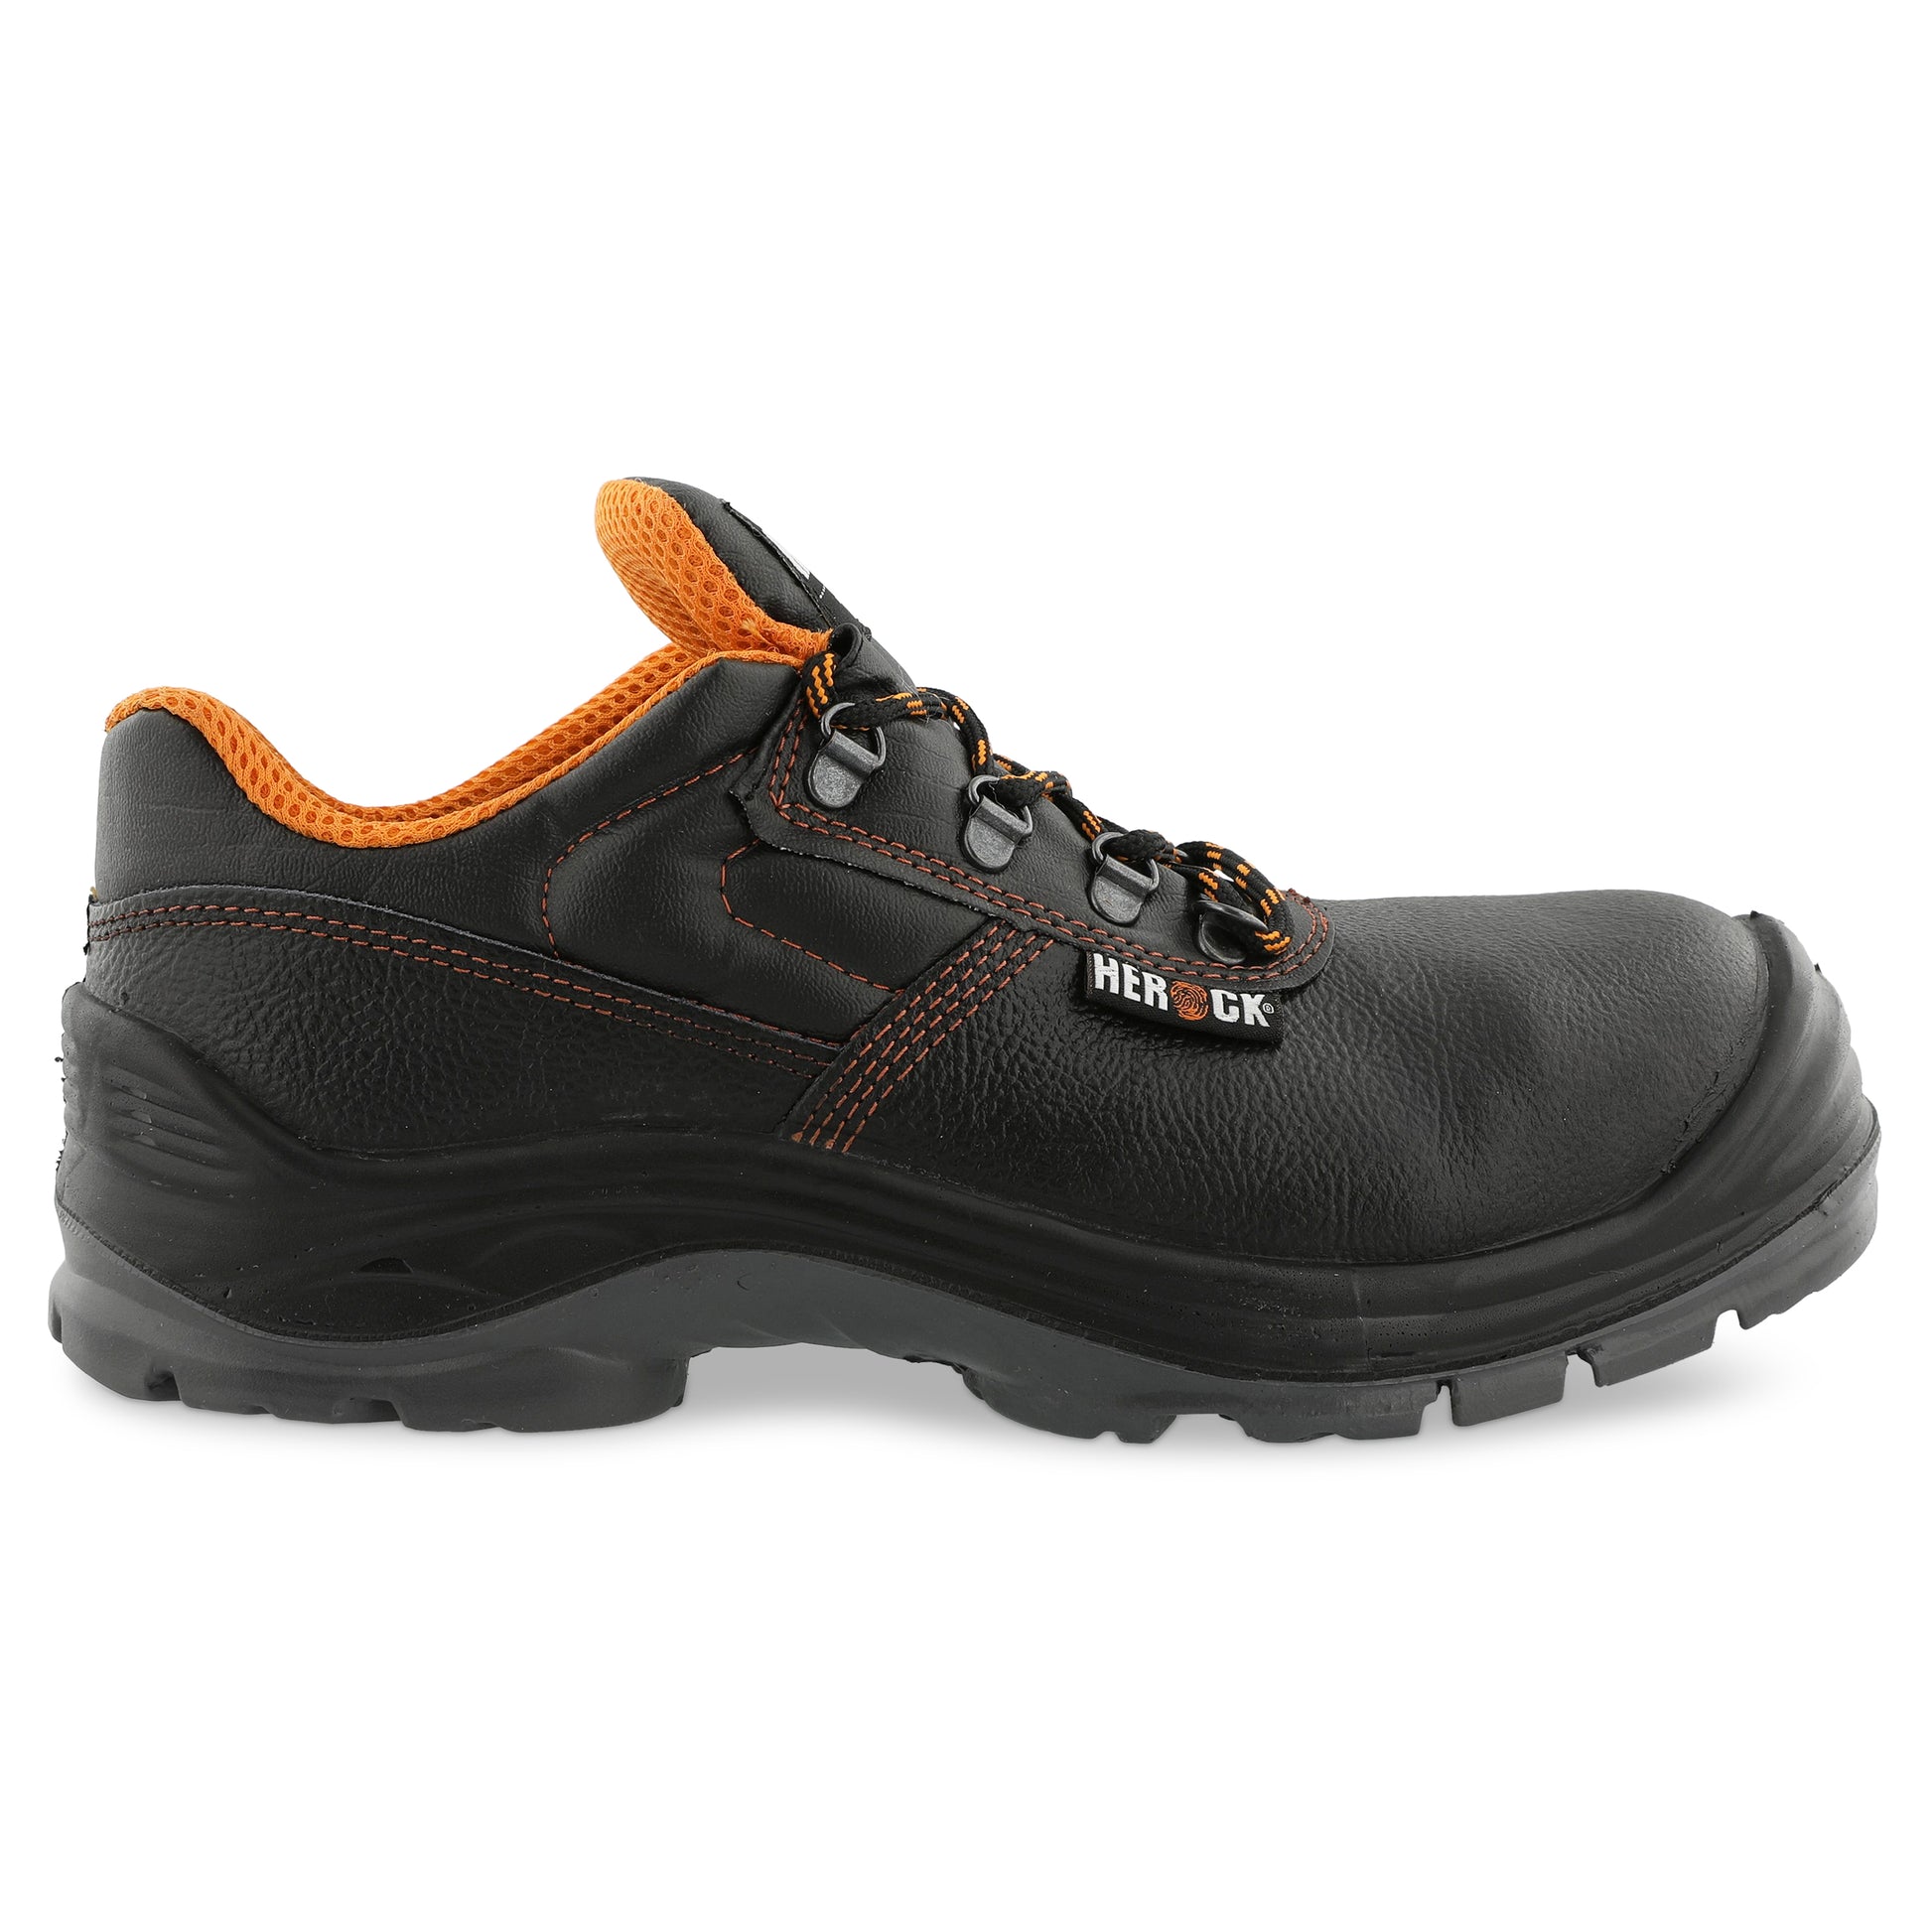 Herock Primus Low Compo S3 schoenen in de kleur zwart